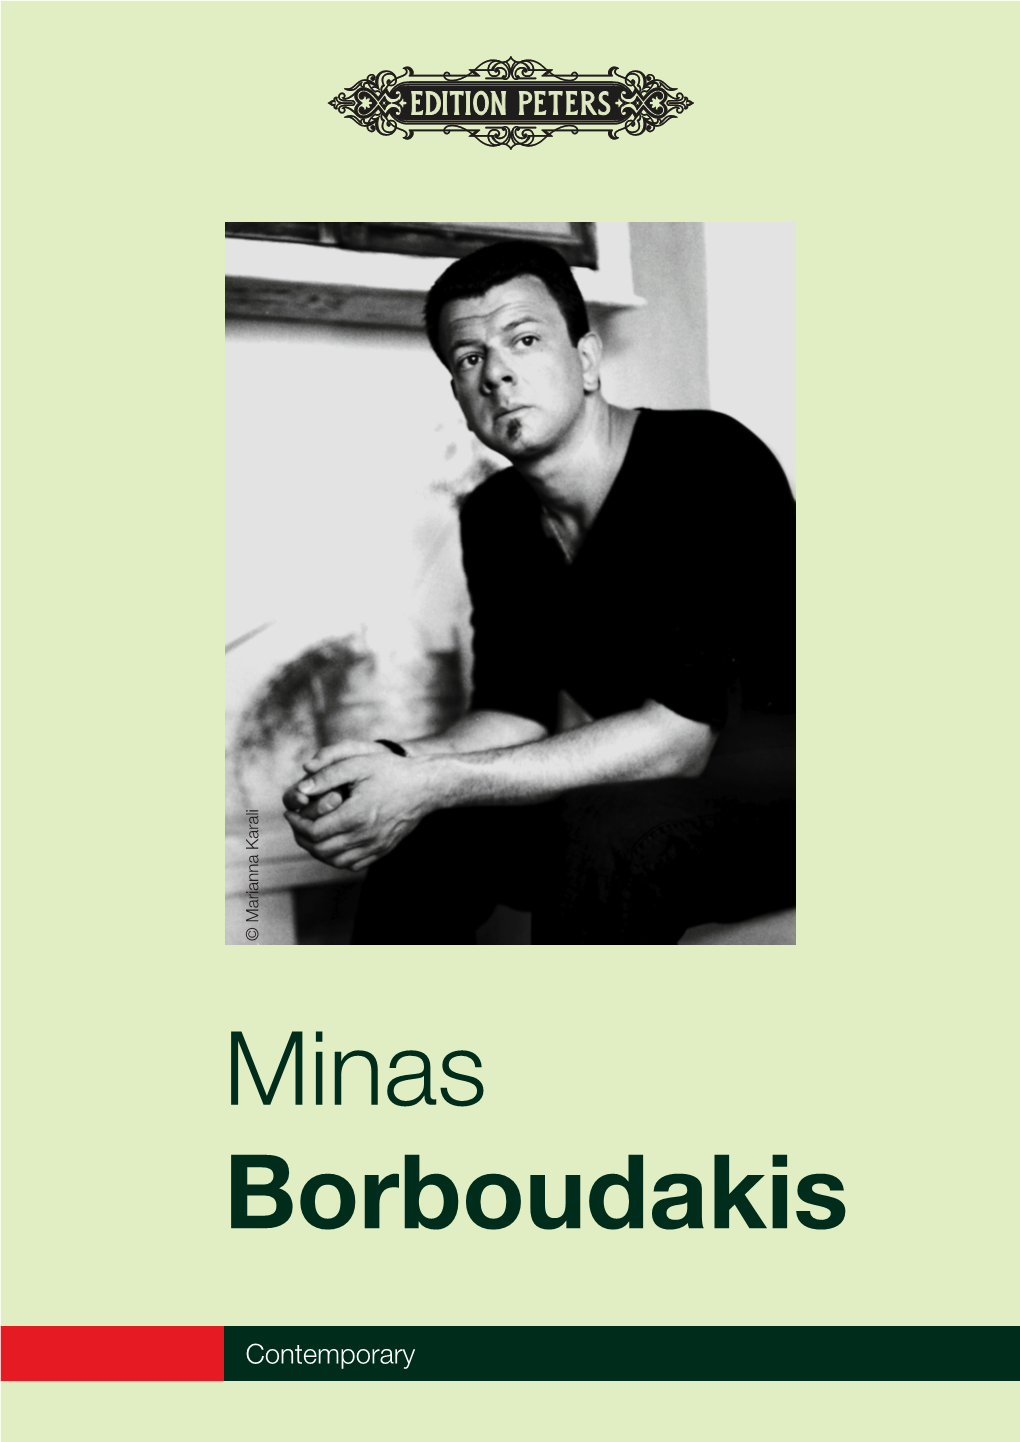 Minas Borboudakis